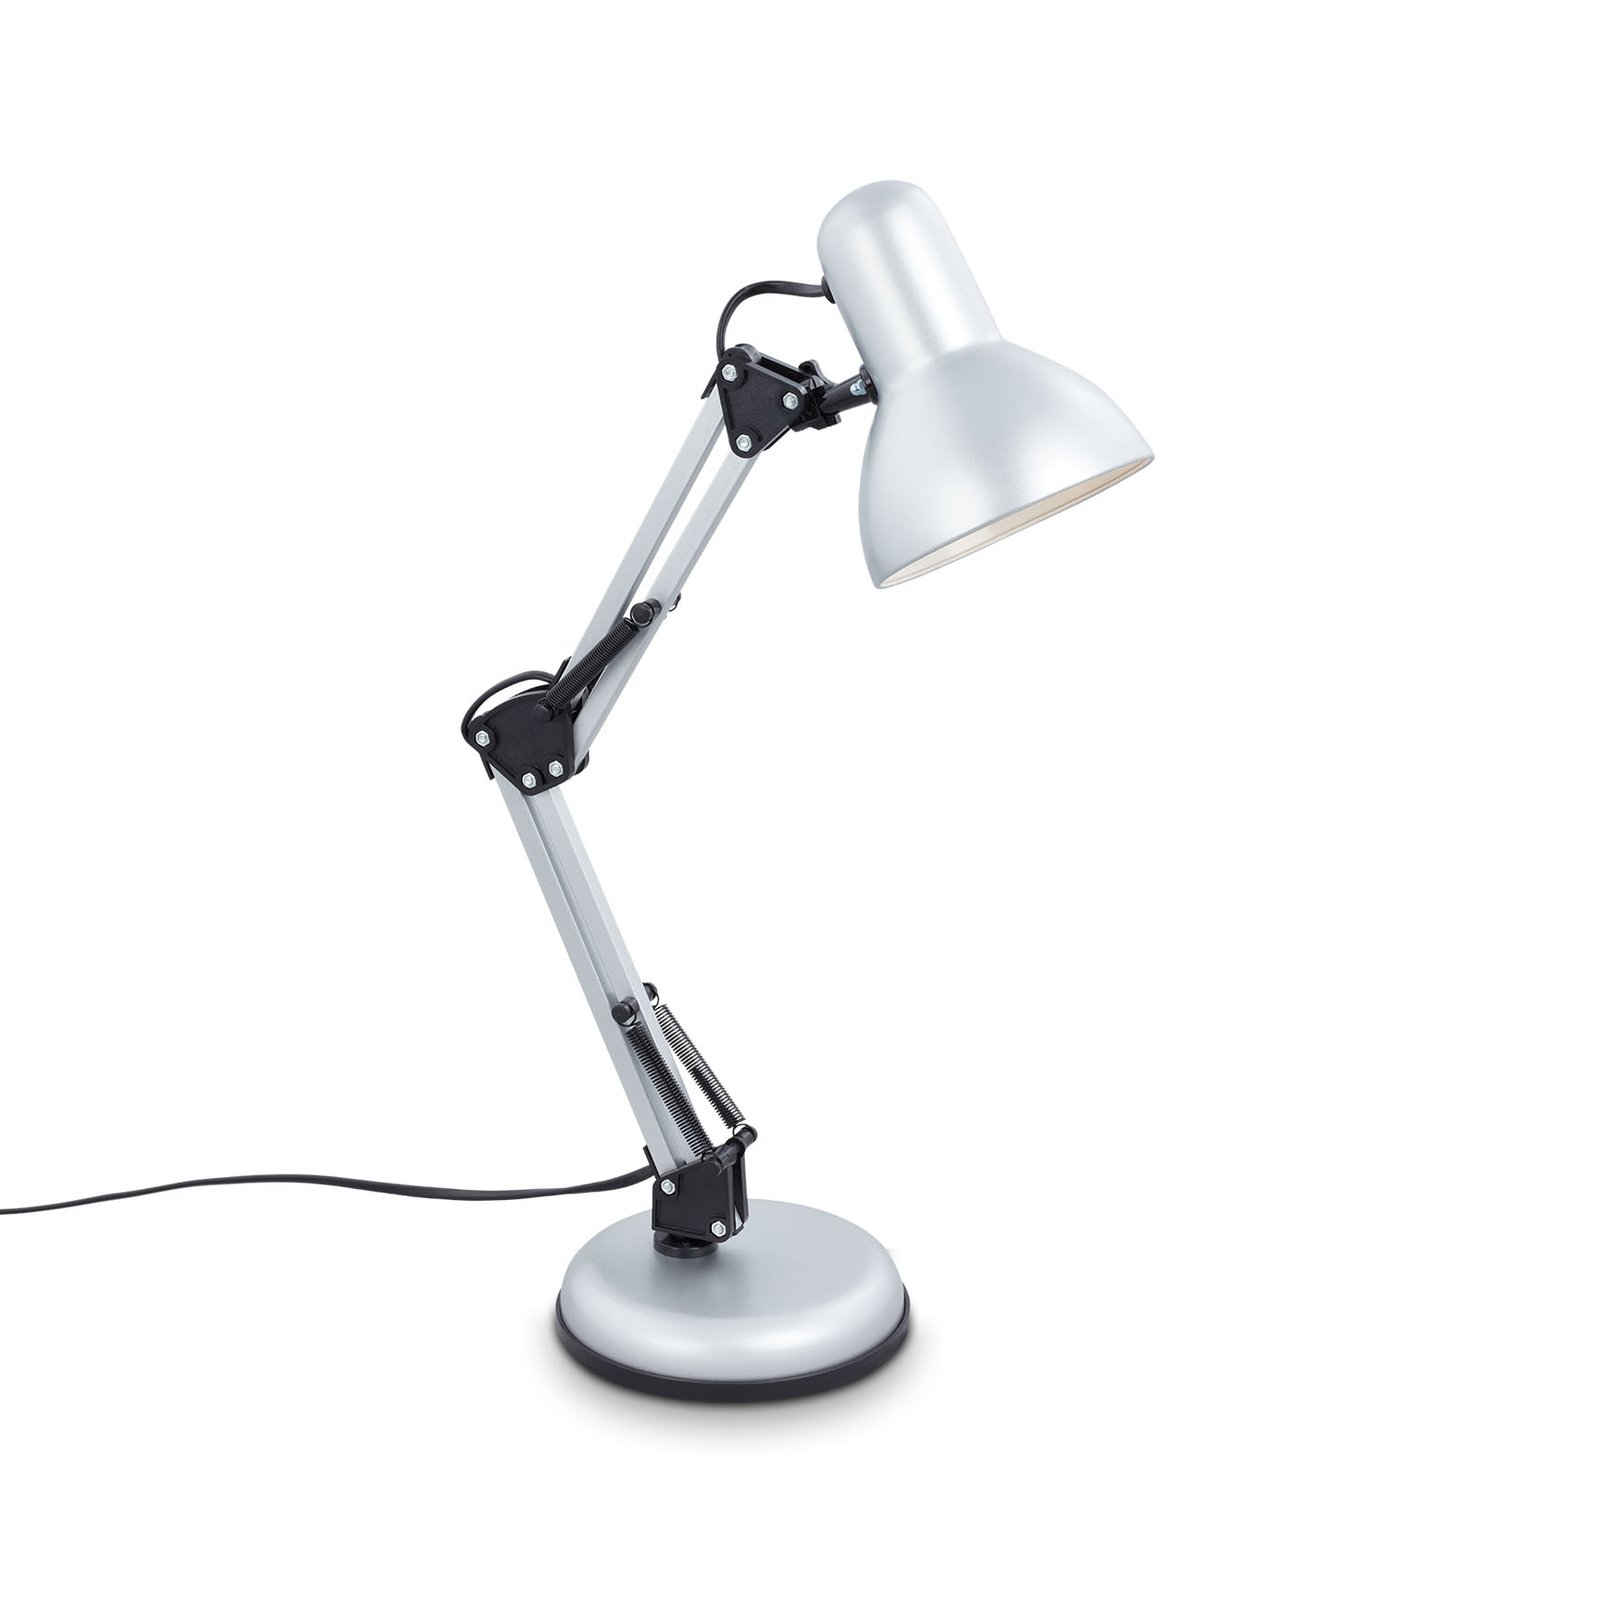 Pixa desk lamp, adjustable, E14, white